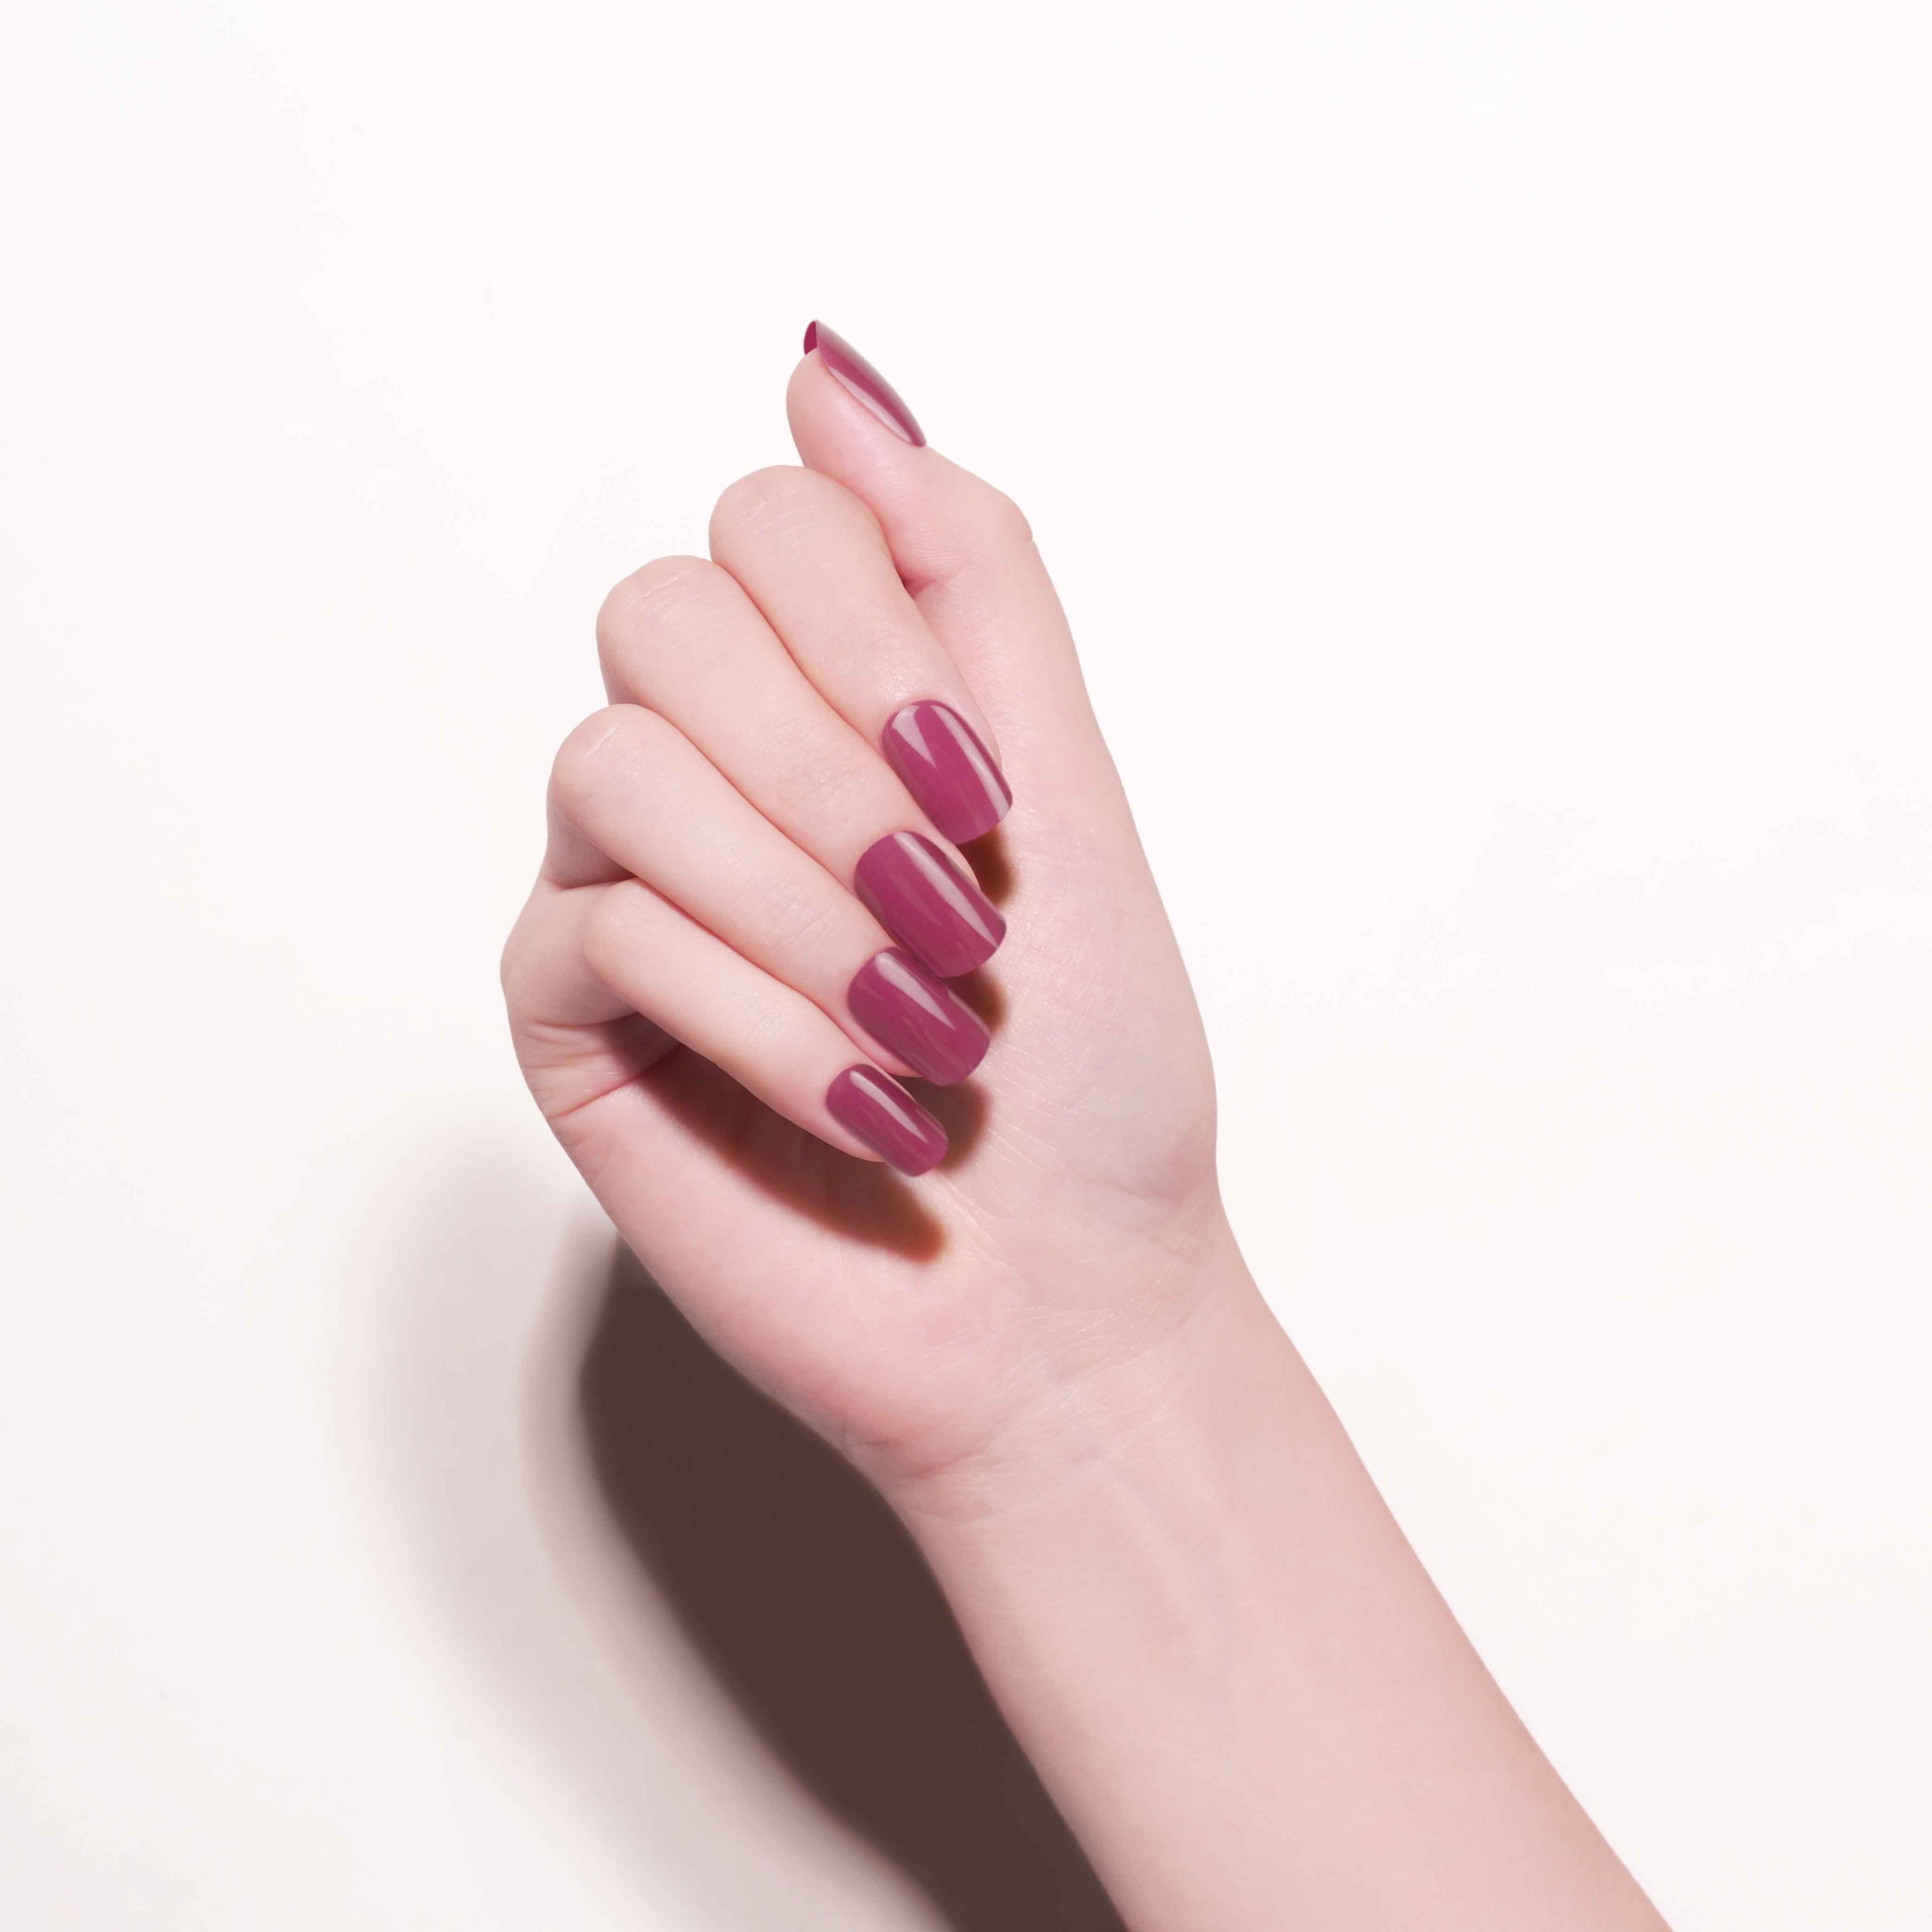 Elegant Burgundy Gloss Semi Cured Gel Nail Strips | Rosy Embrace - 2386